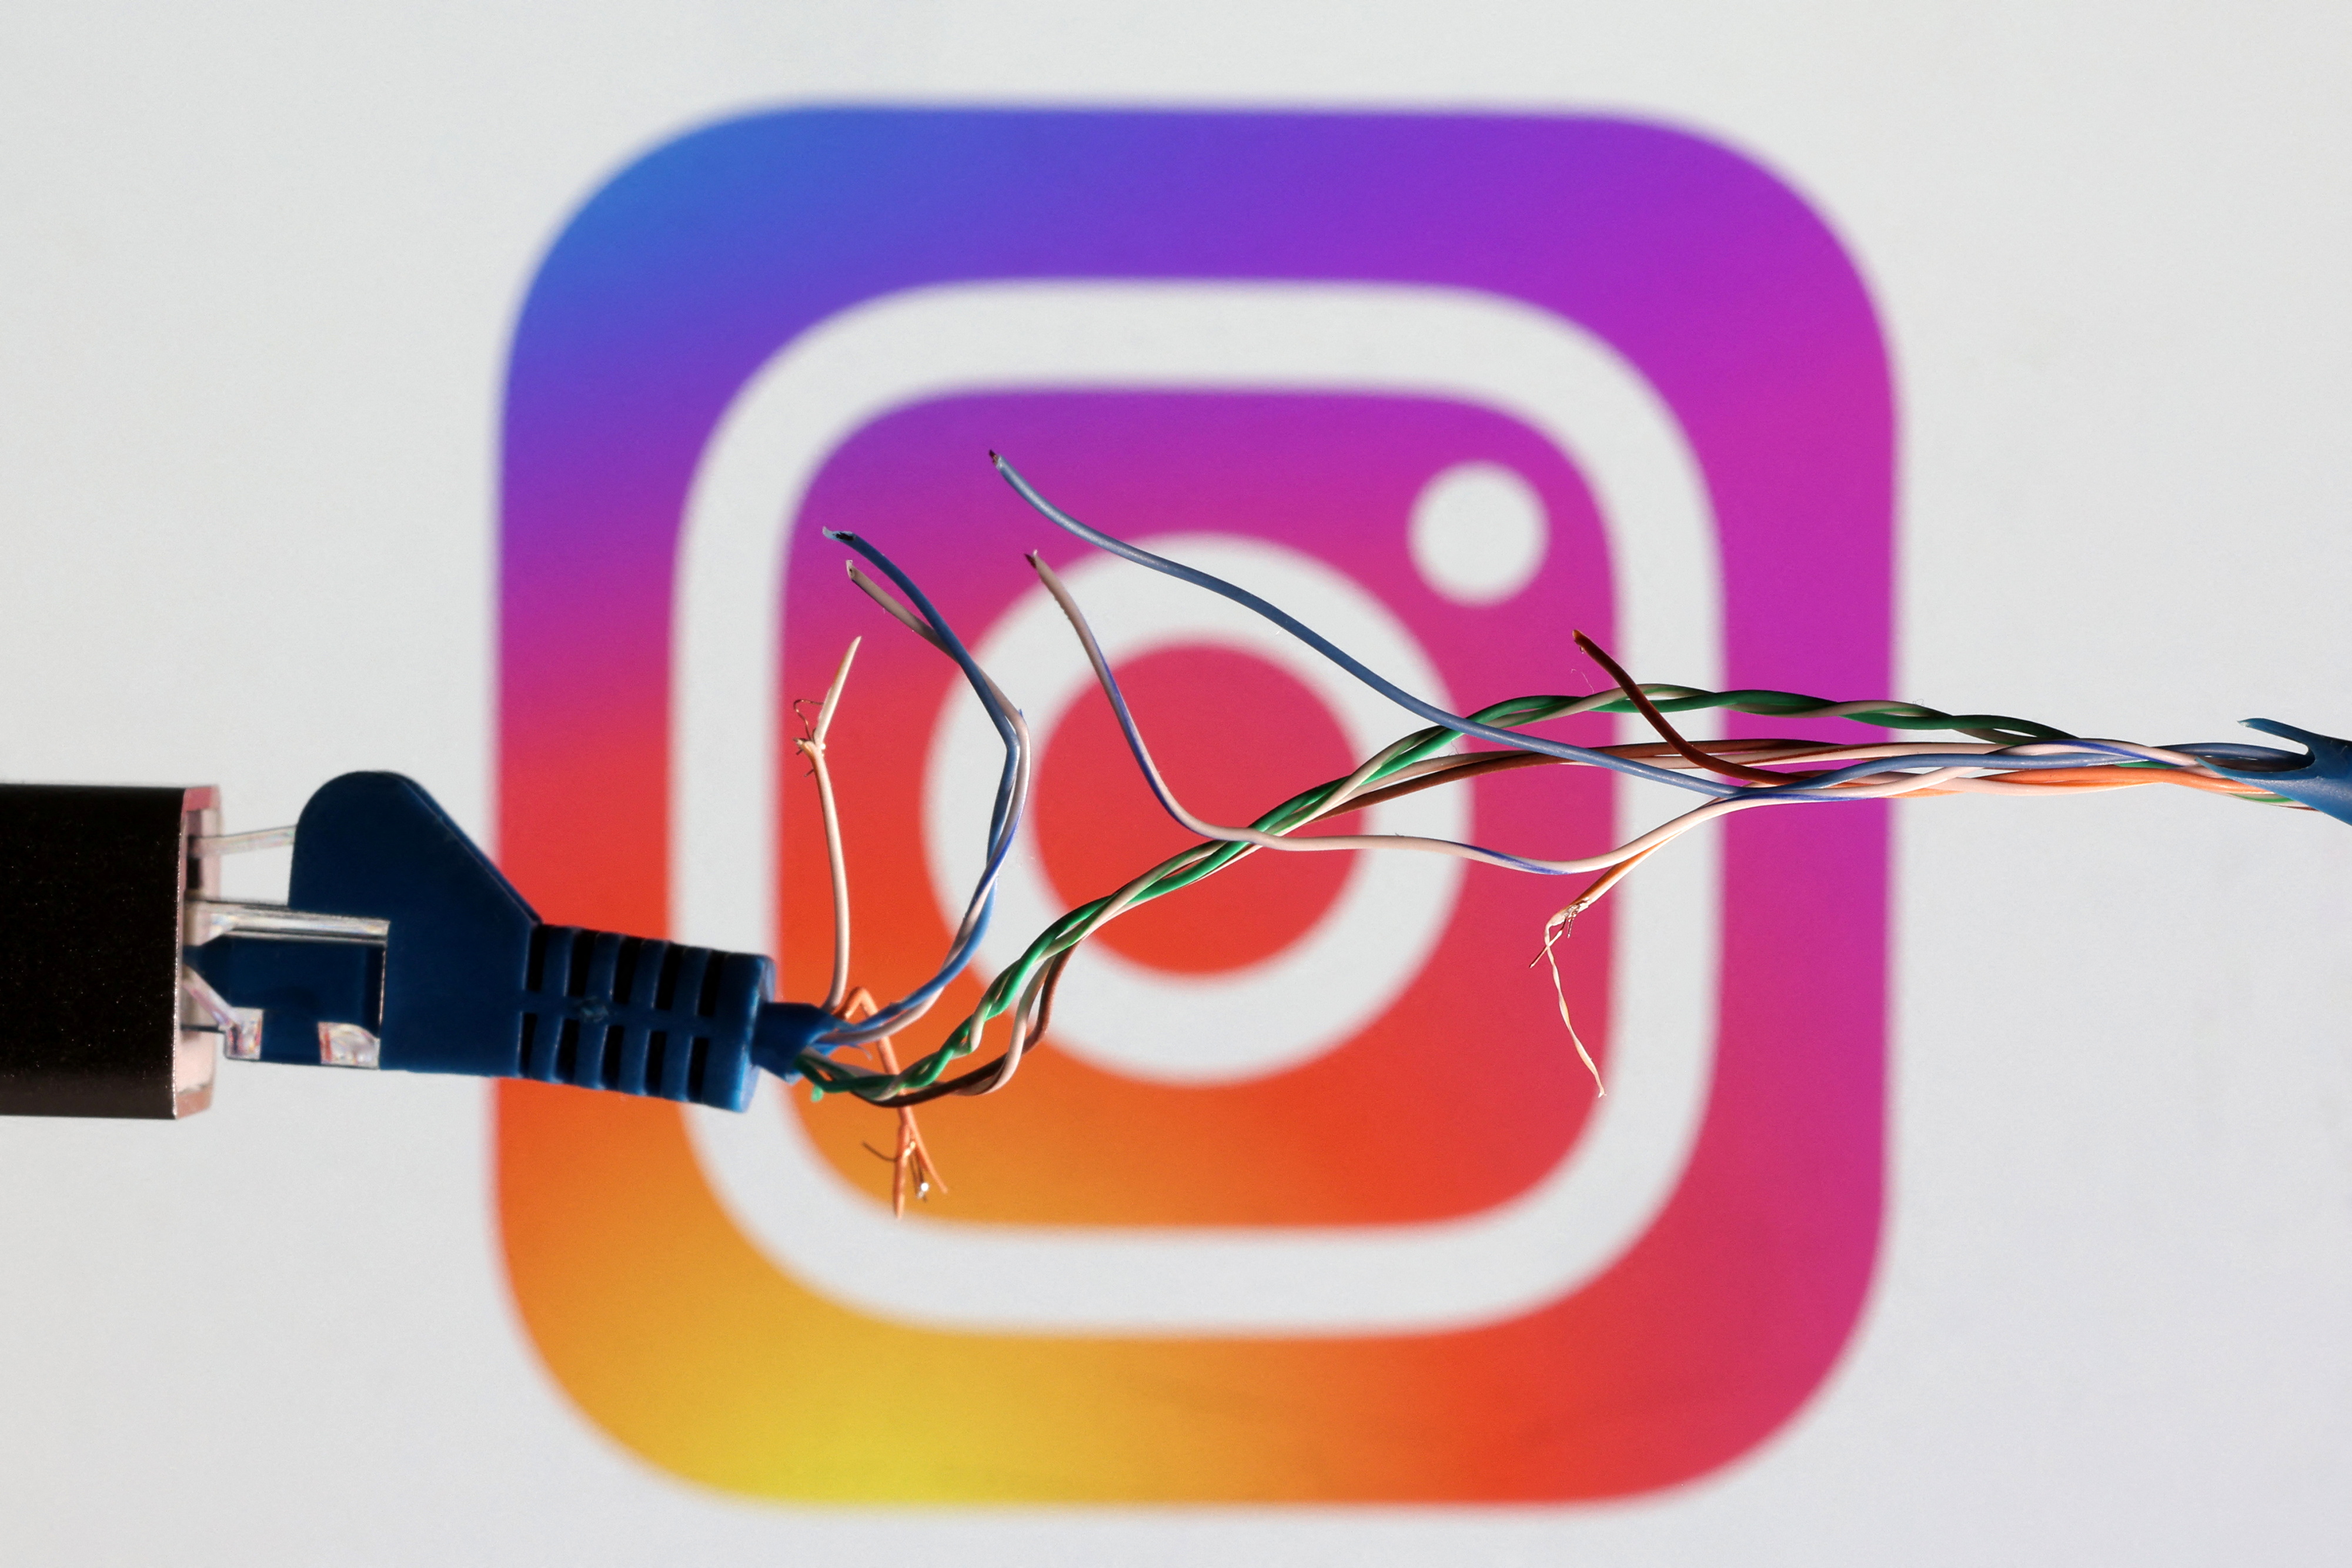 Illustration shows broken Ethernet cable and Instagram logo